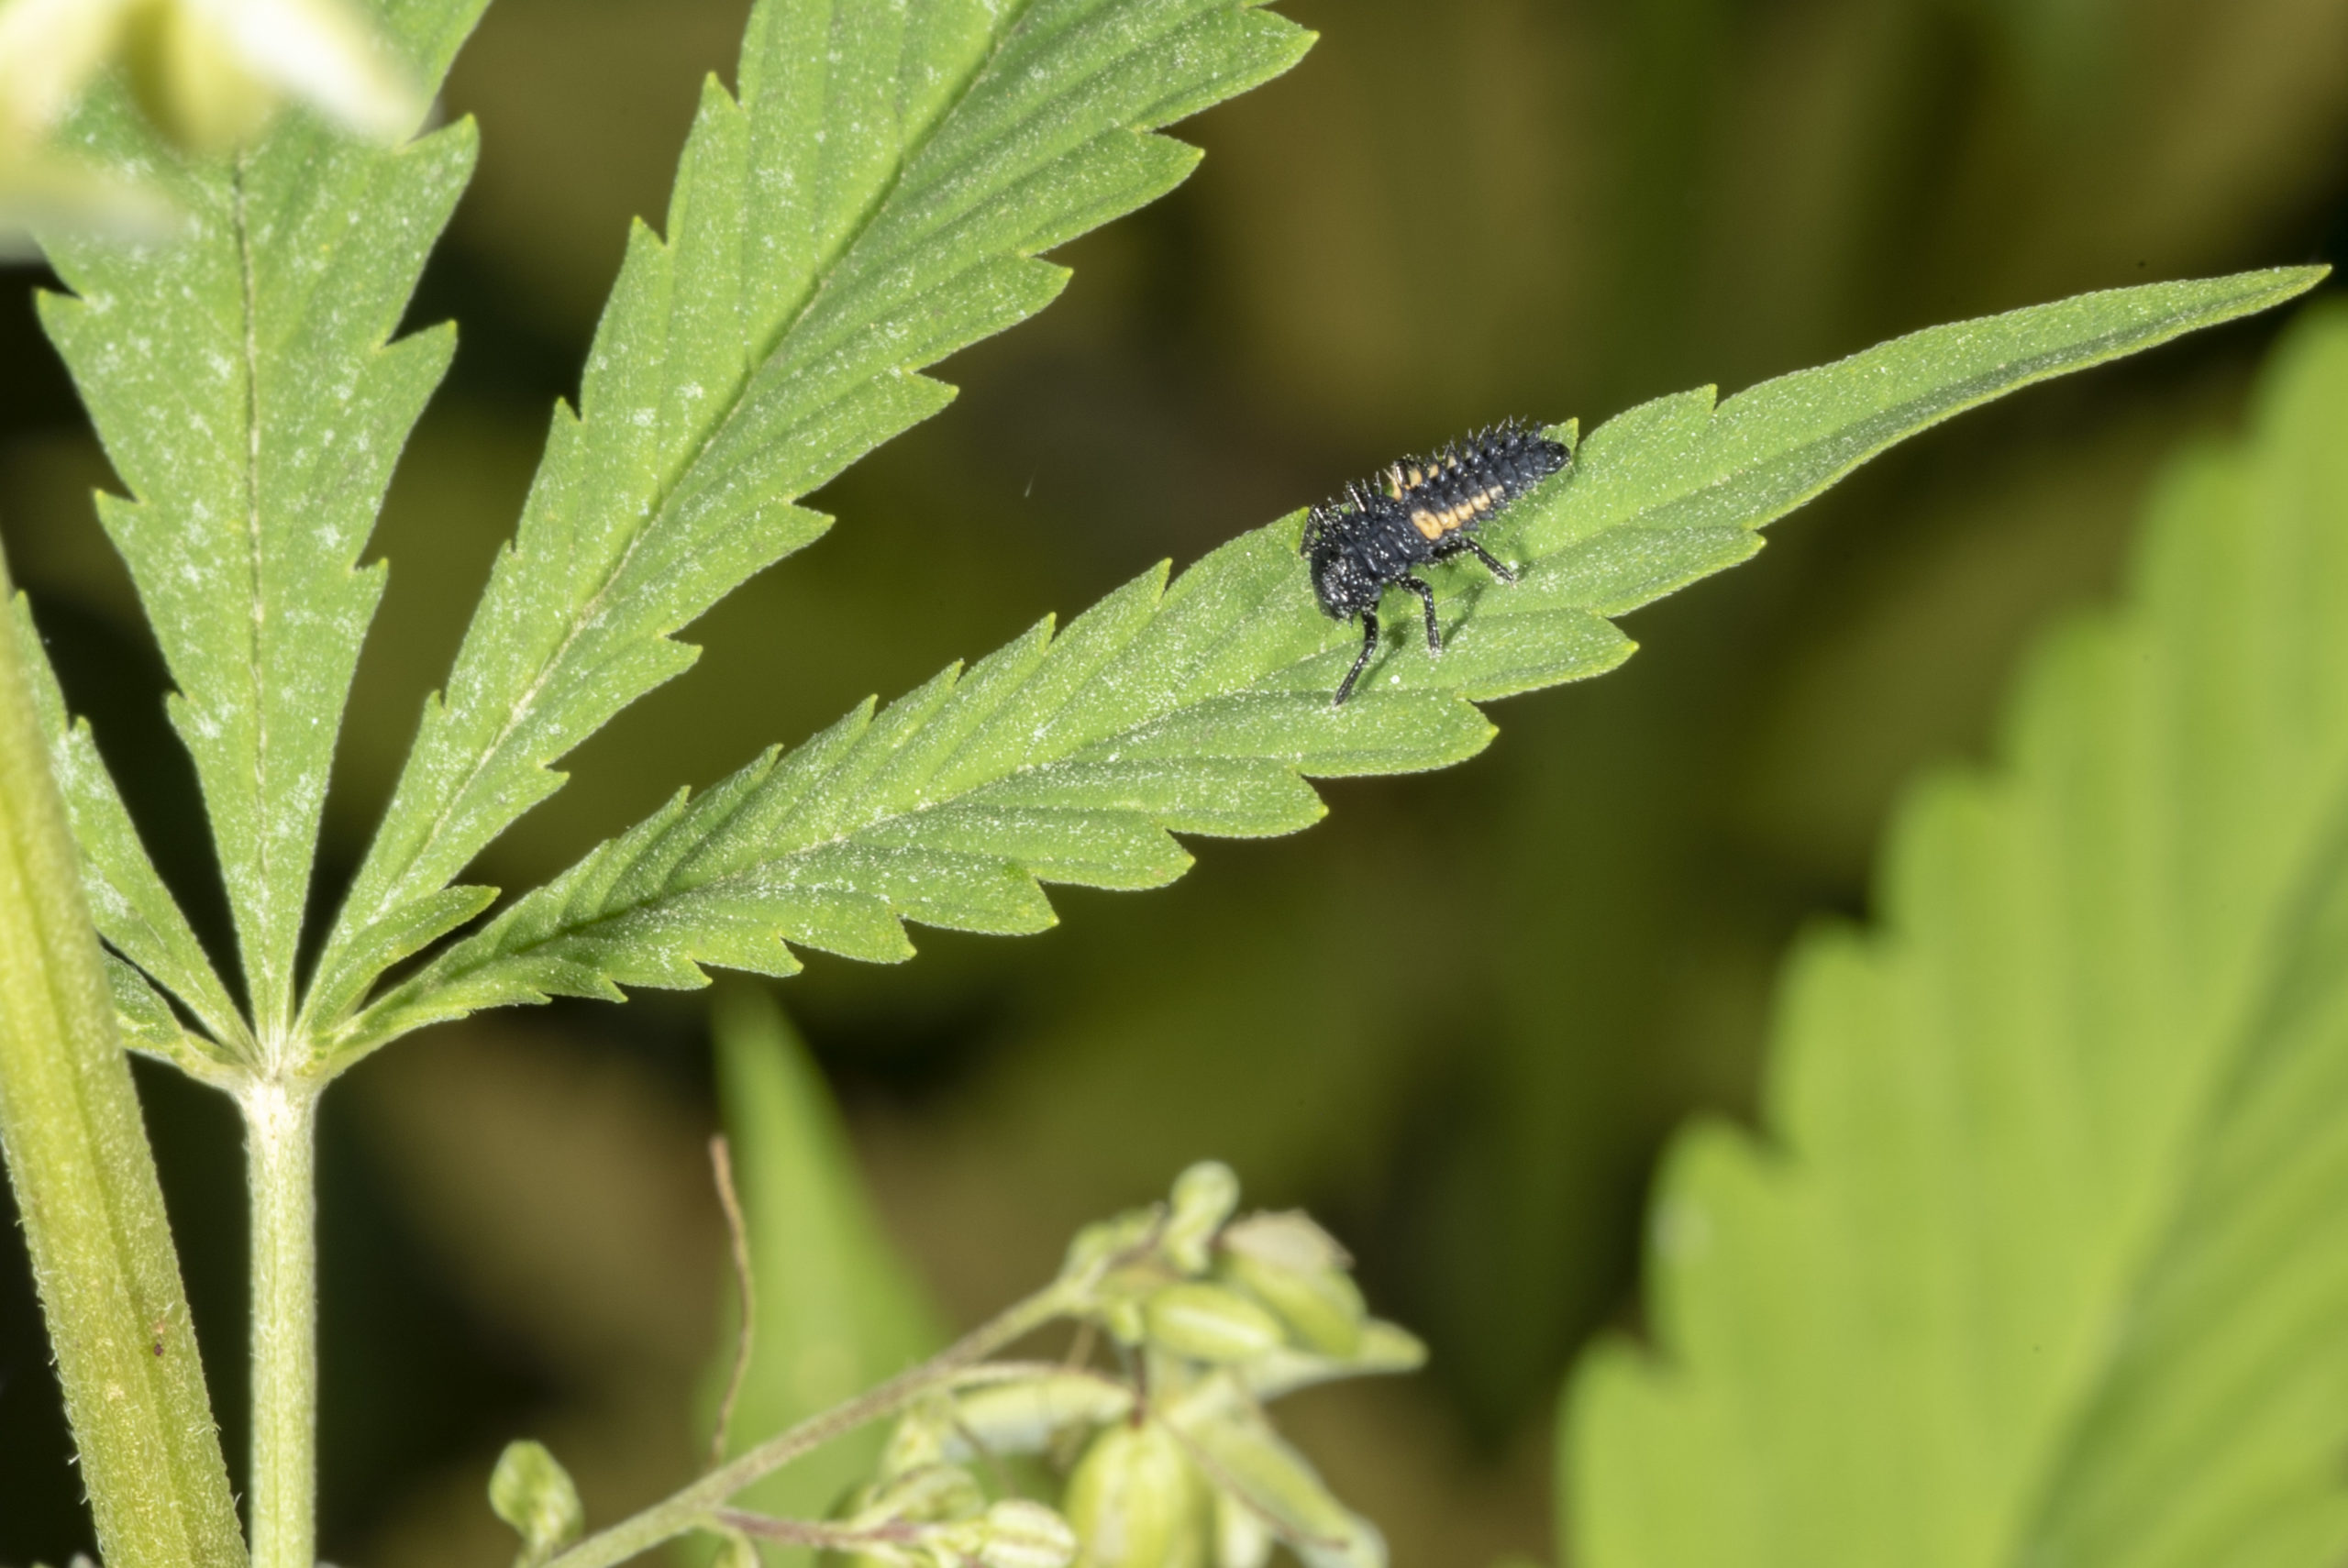 Image of lady beetle larva on hemp plant